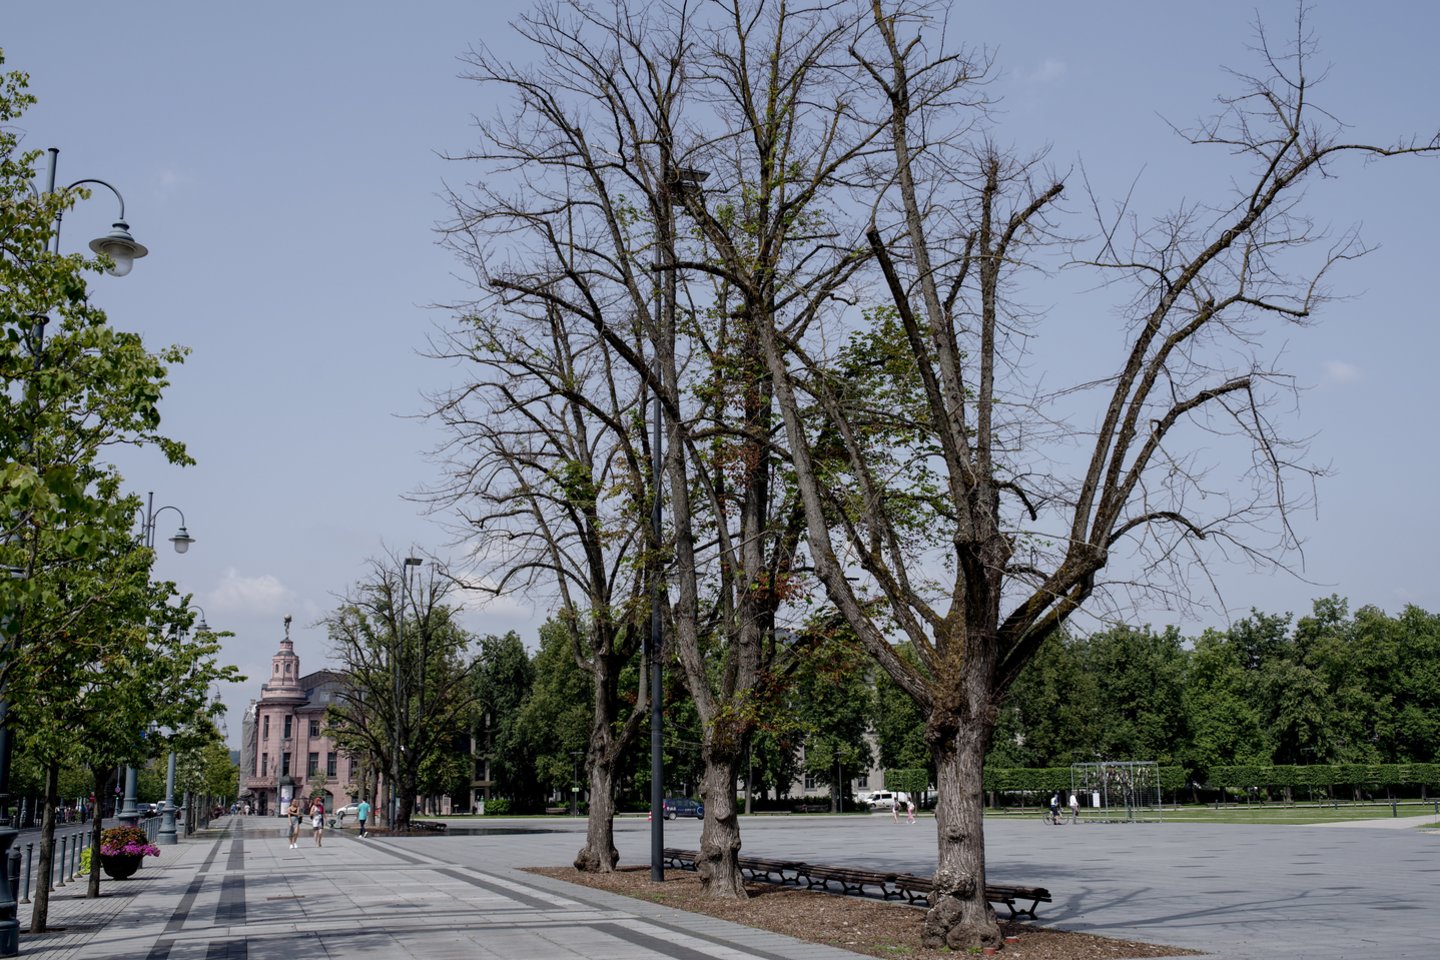 Ilgus metus Vilniaus mieste vyko ne medžių priežiūra, o tiesiog nesiskaitymas su jais.<br>V.Ščiavinsko nuotr.